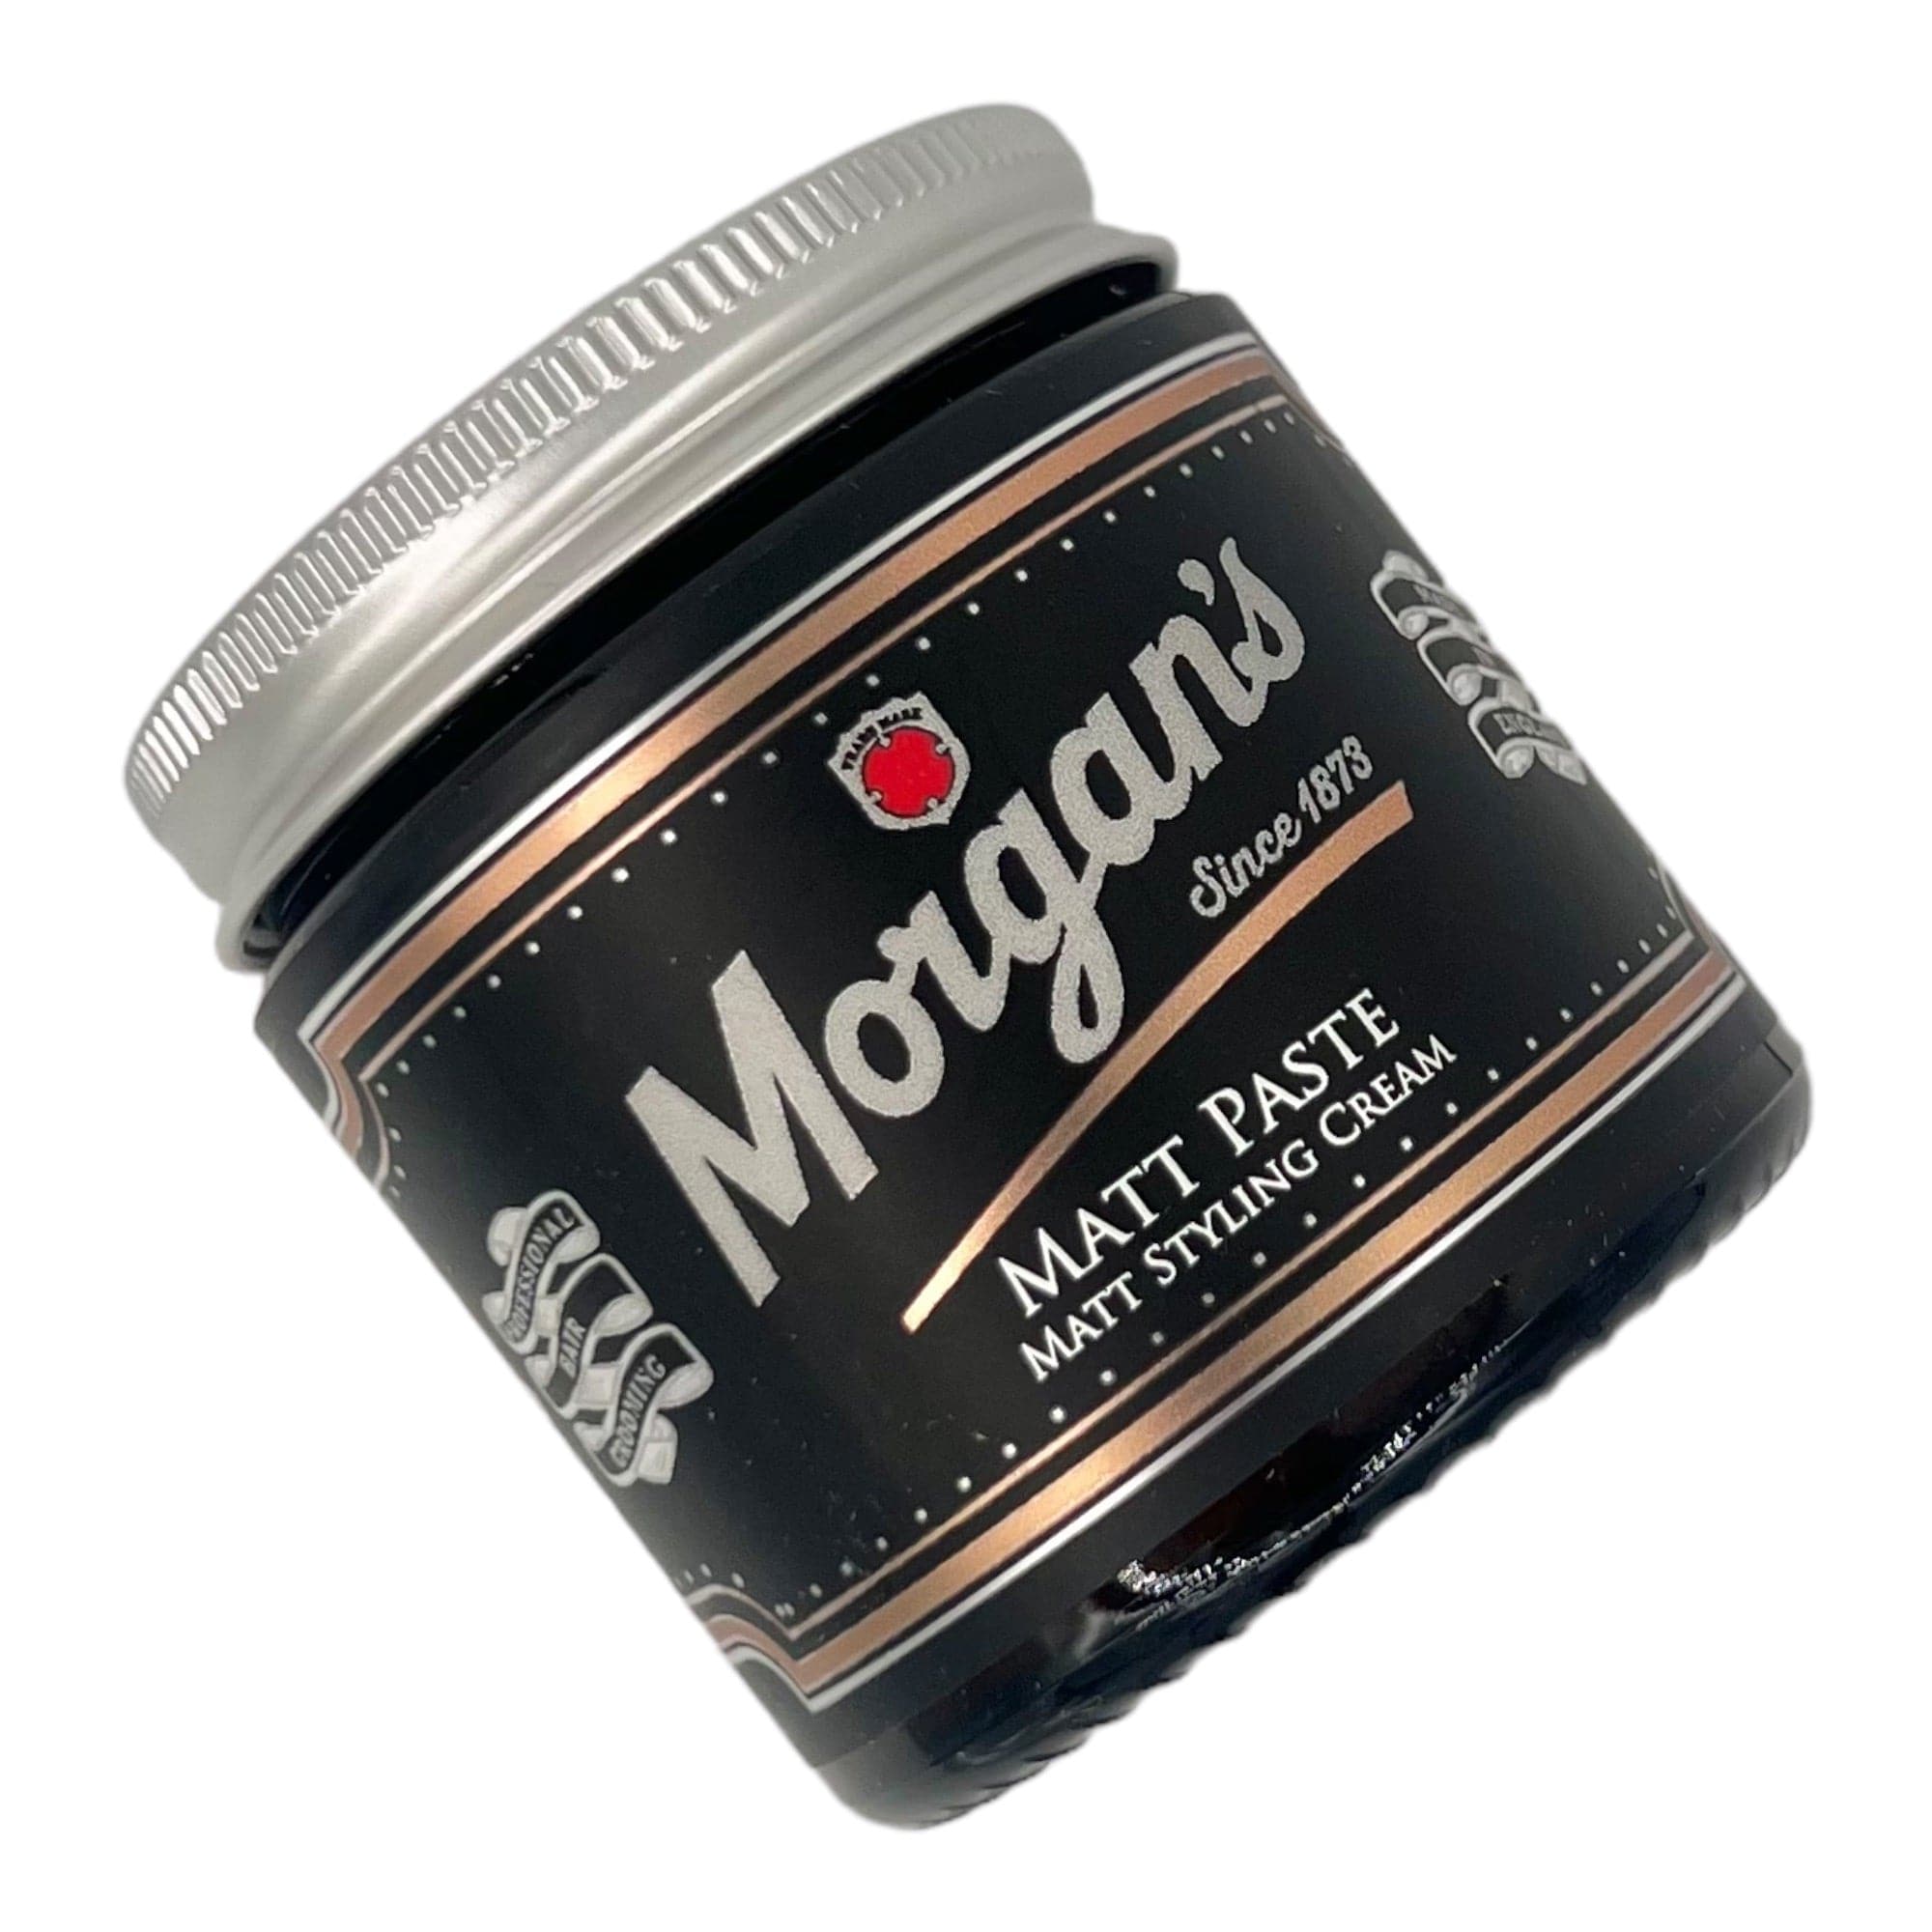 Morgan's - Matt Paste Matt Styling Cream 120ml